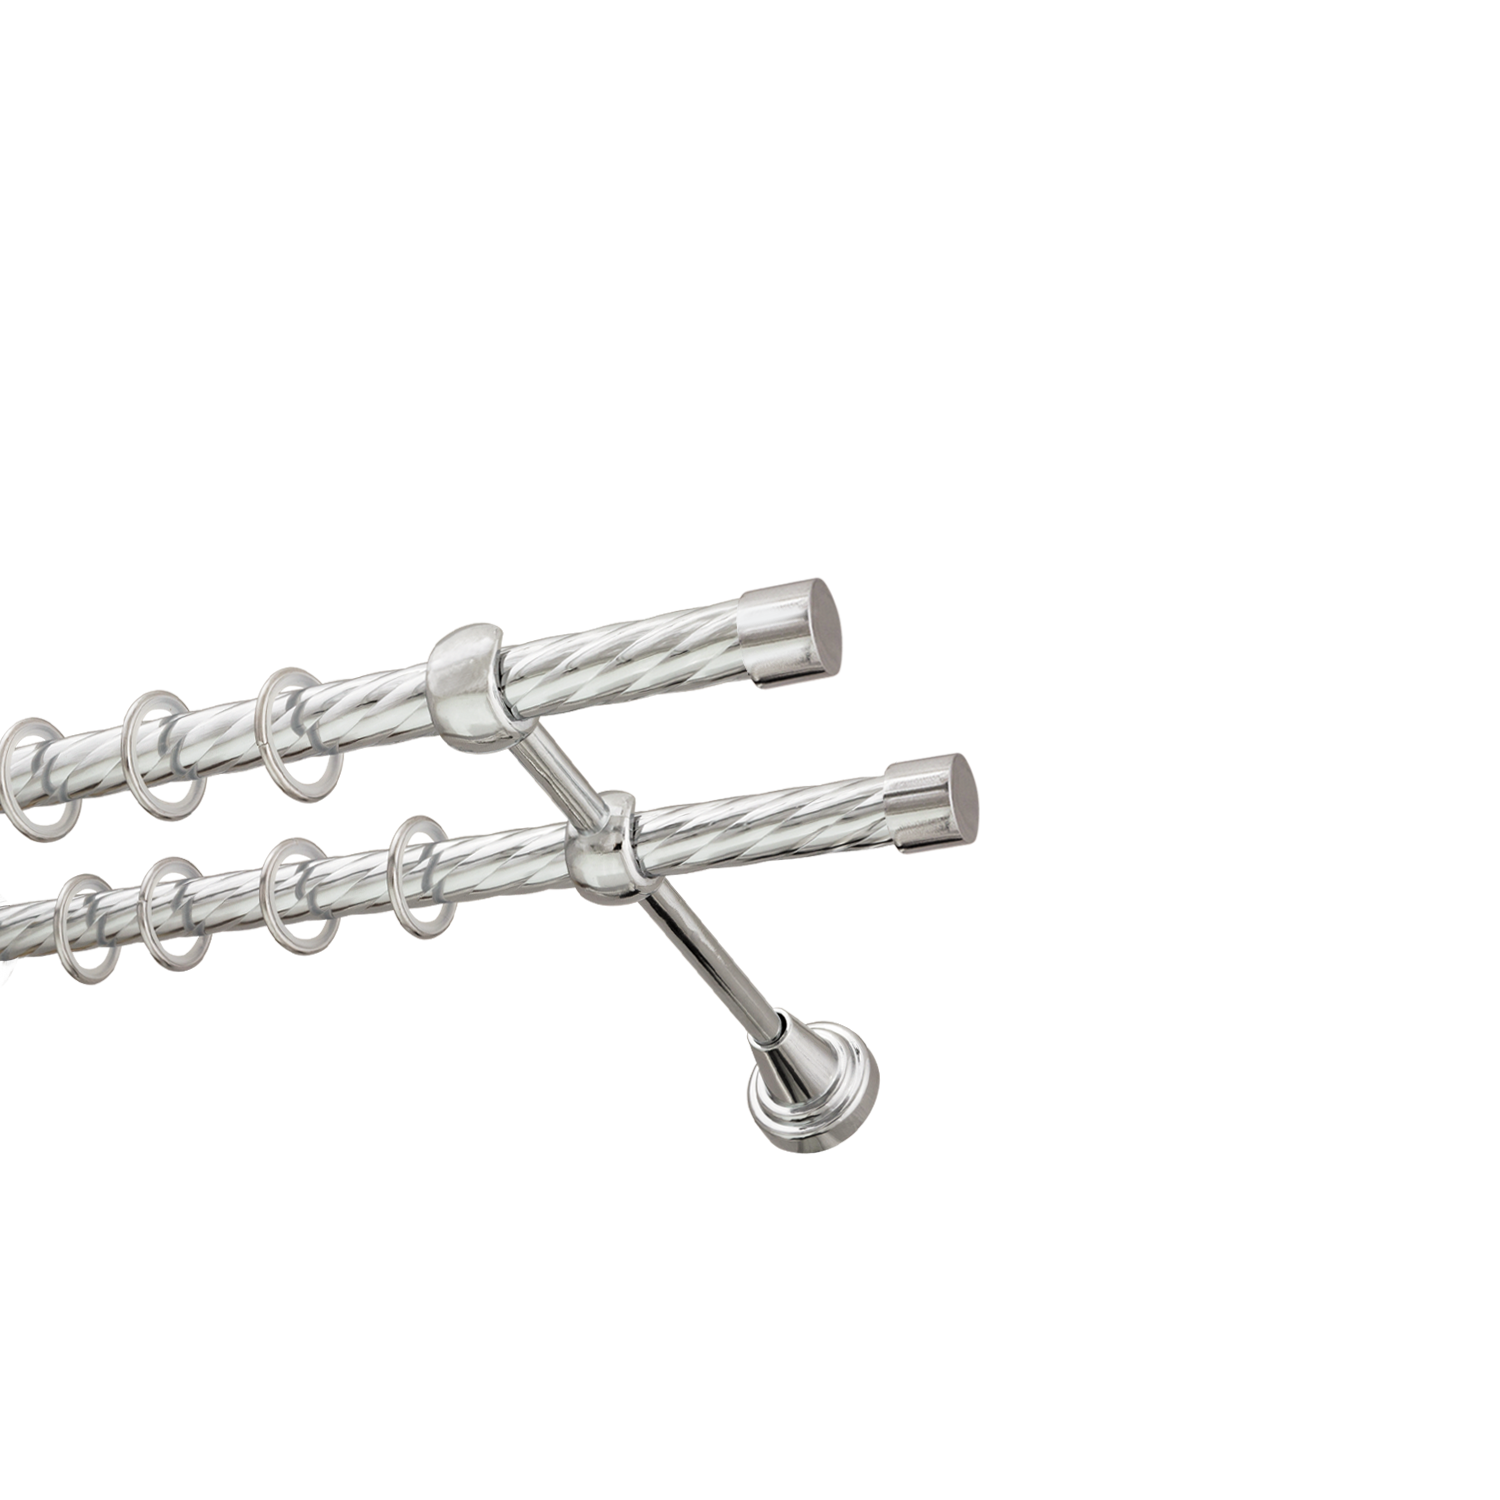 Металлический карниз для штор Заглушка, двухрядный 16/16 мм, серебро, витая штанга, длина 240 см